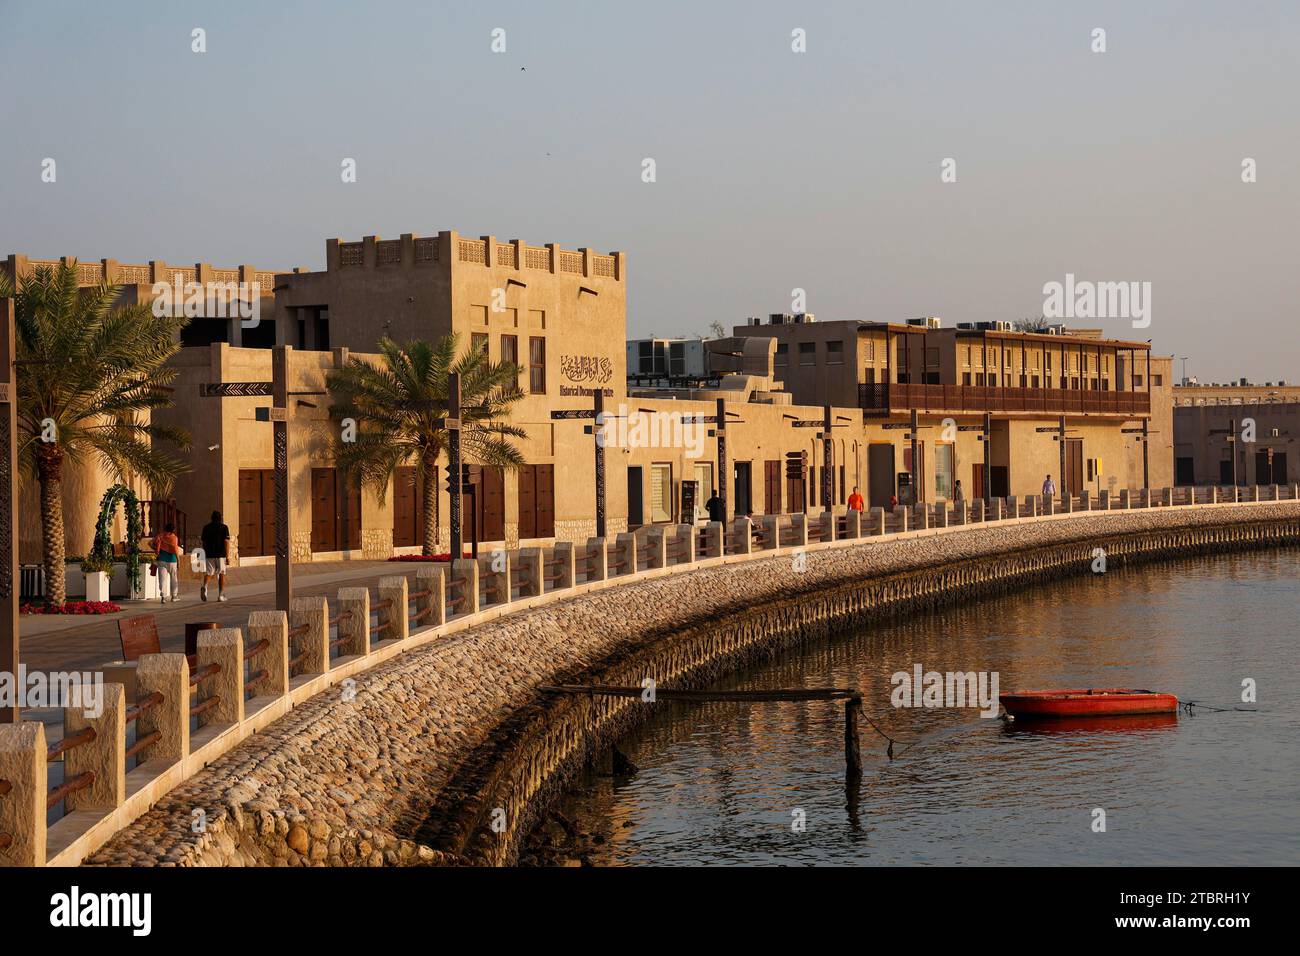 Al Shindagha historic area at sunrise, Dubai, UAE. Stock Photo